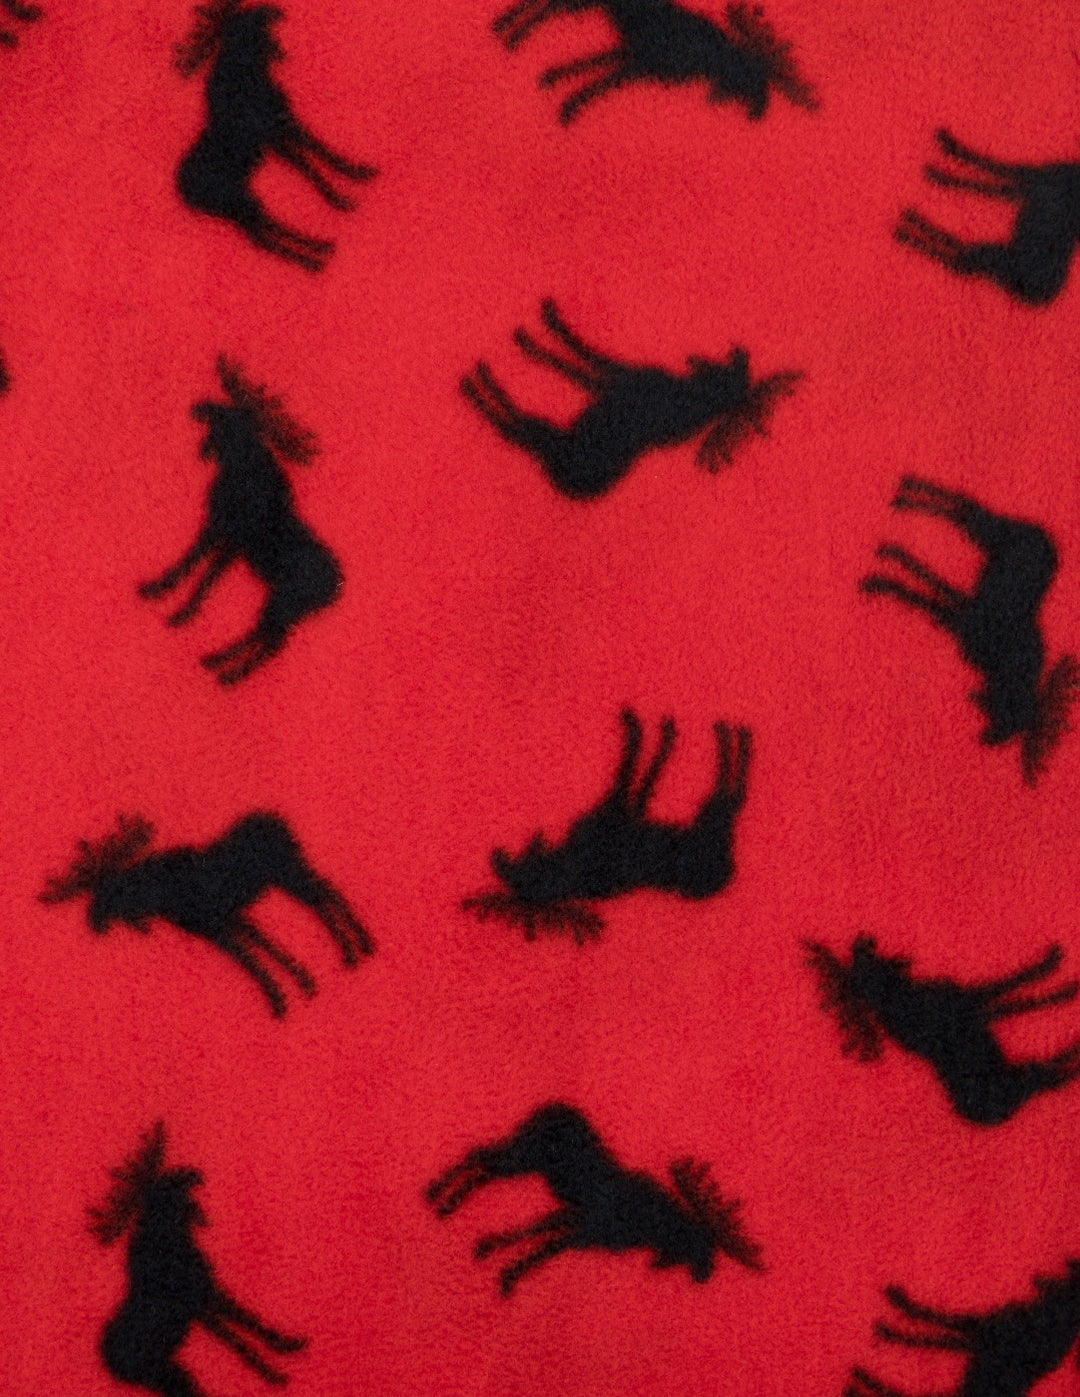 red moose men's fleece pants